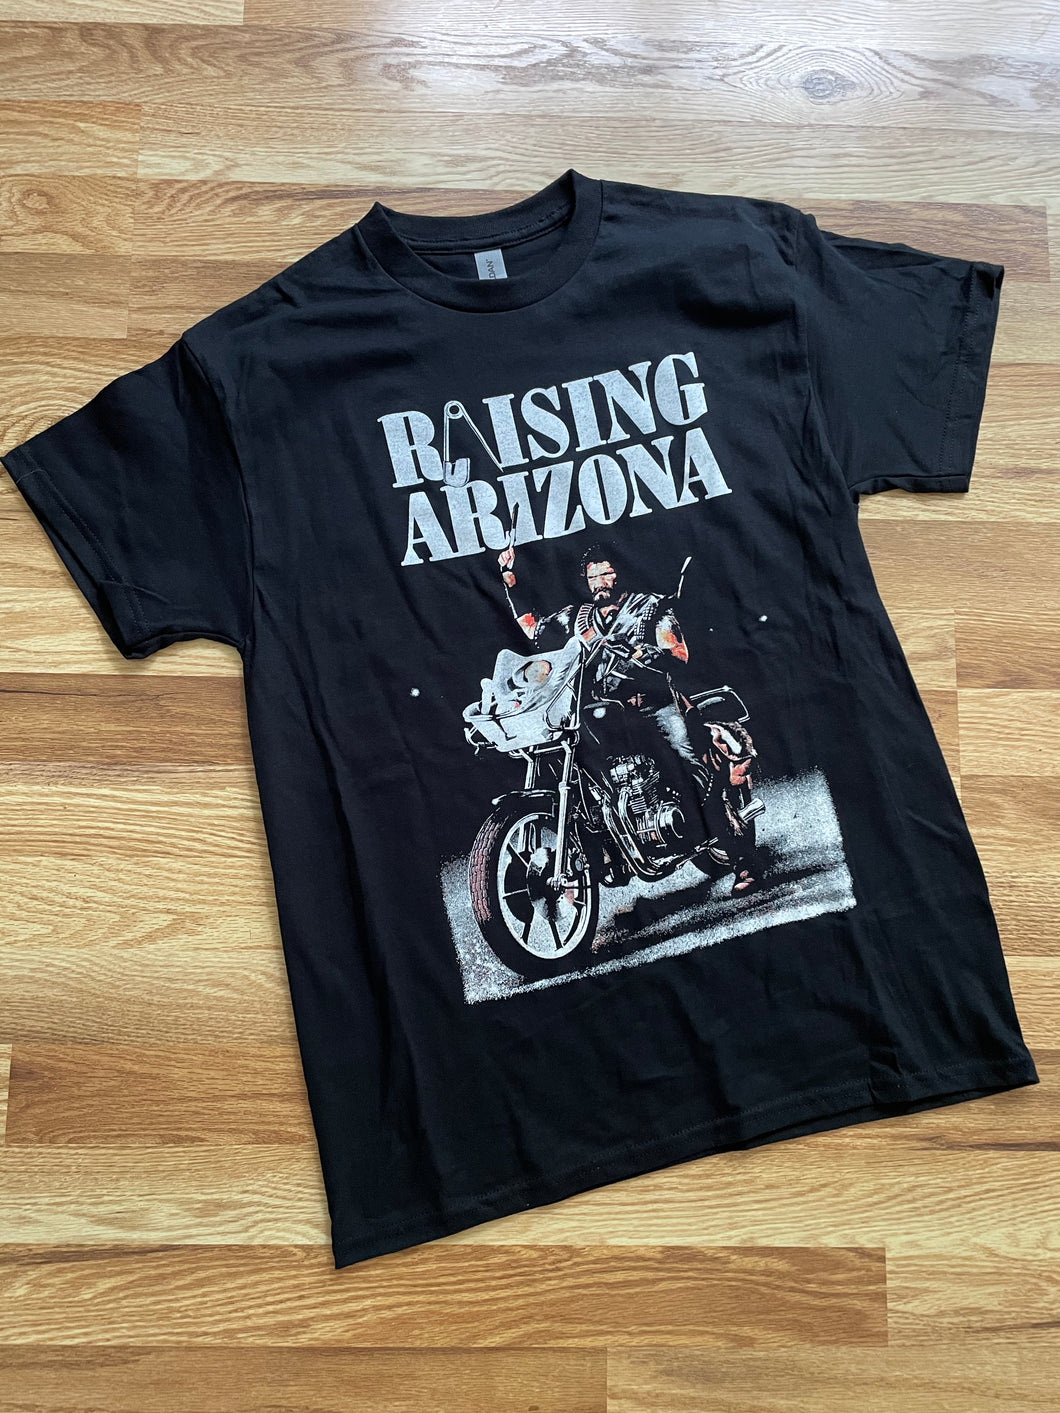 Raising Arizona Shirt